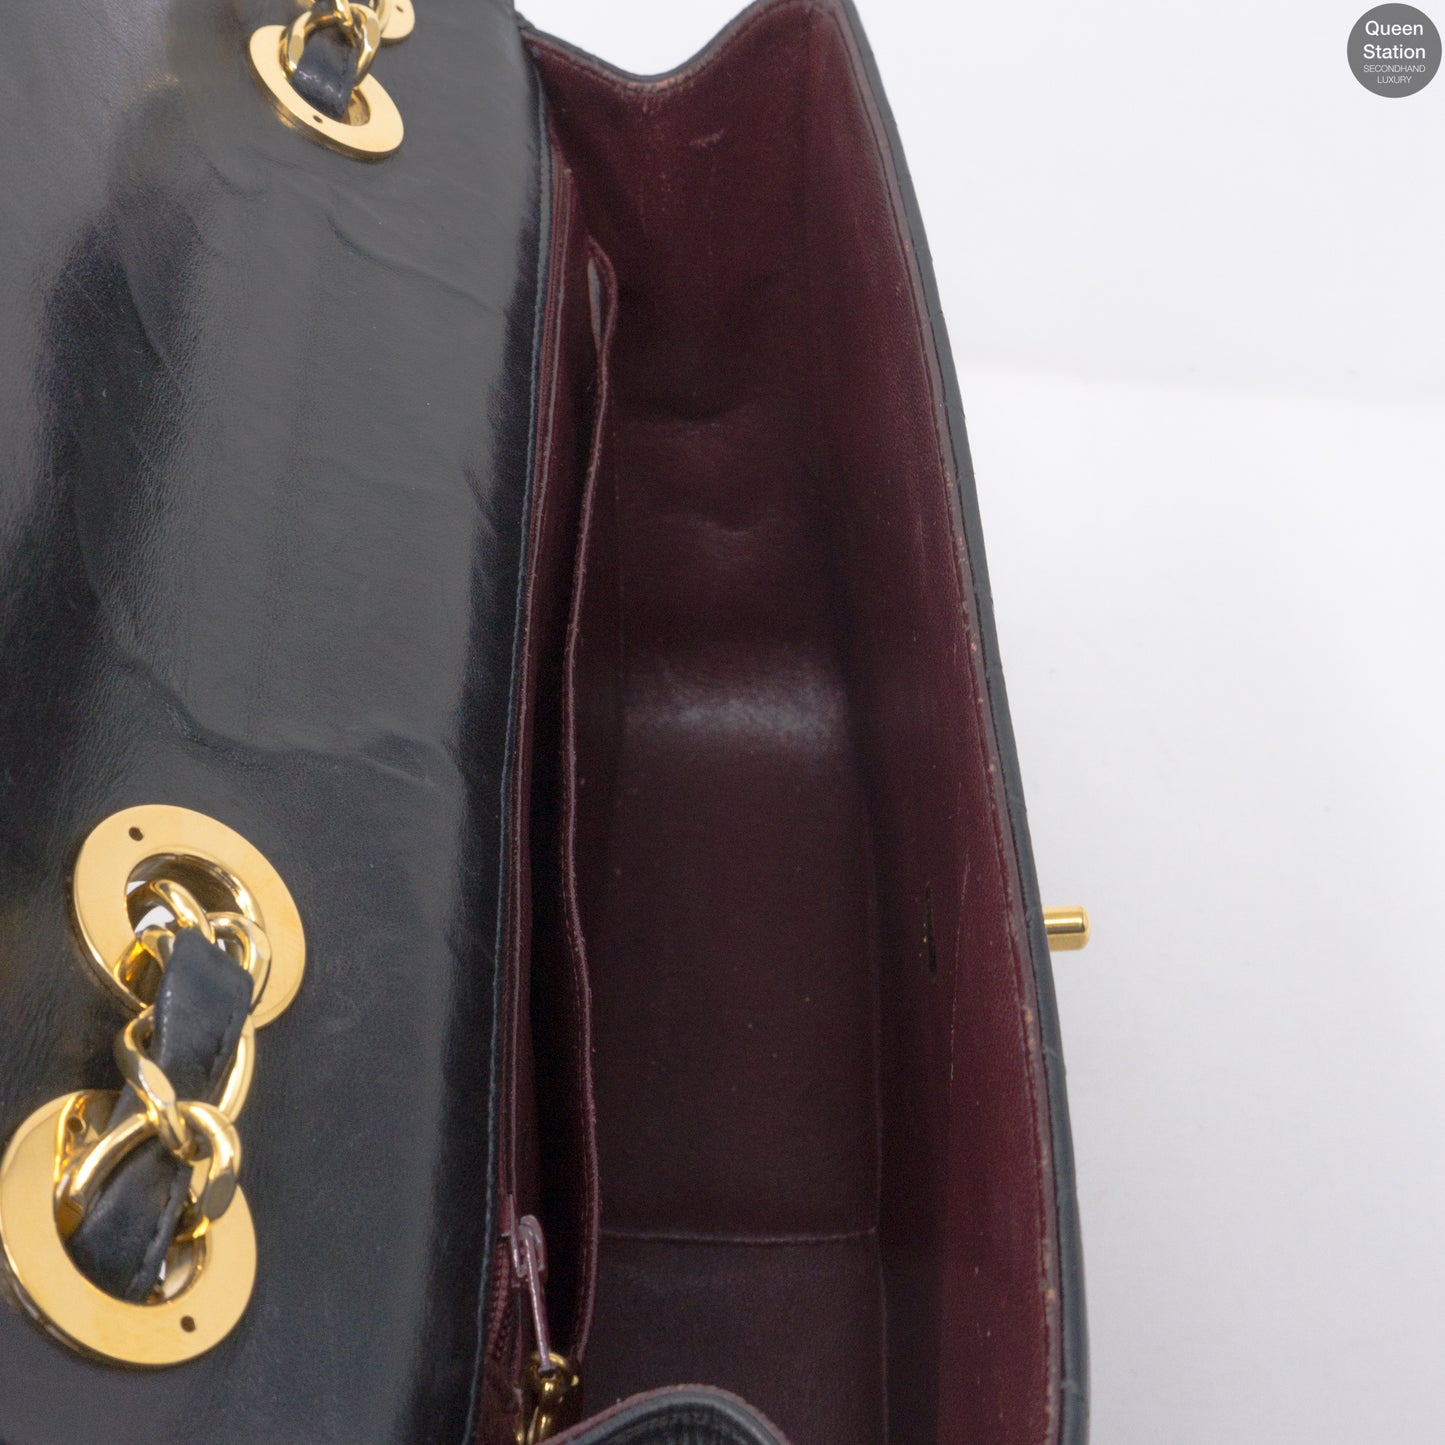 Vintage Black Jumbo Flap Bag